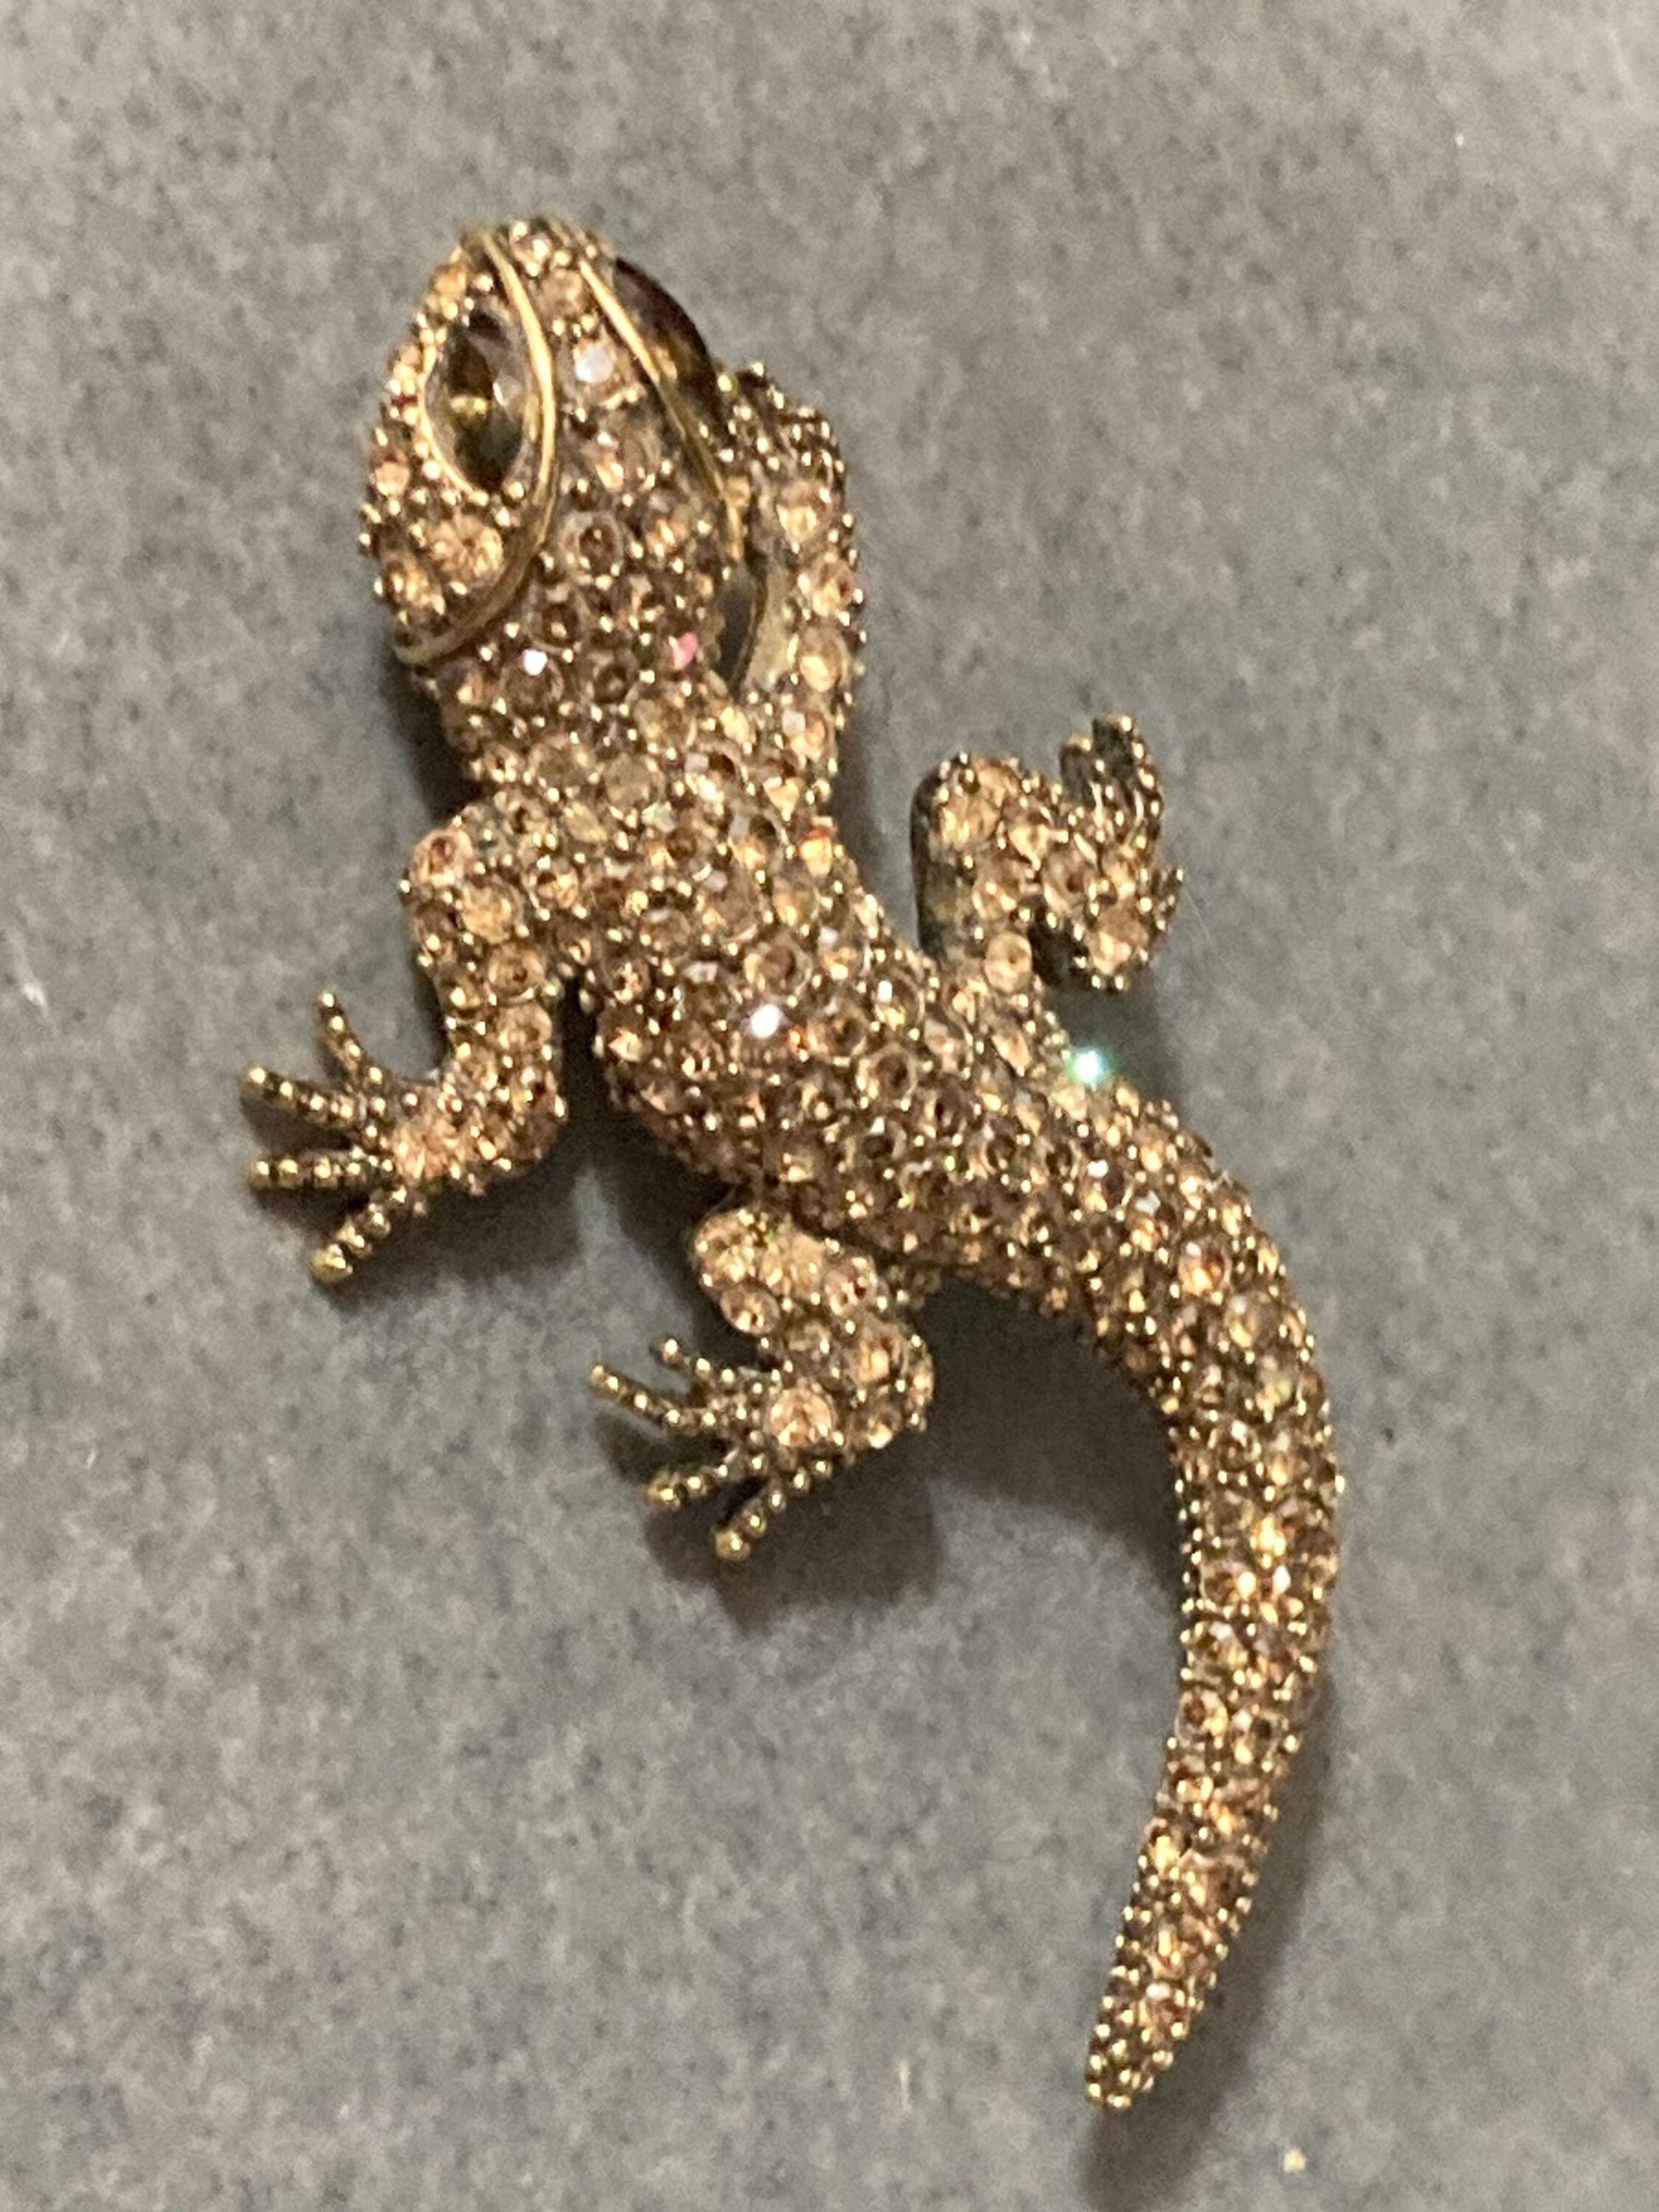 7cm long Retro Gold Tone paste diamanté Lizard Brooch